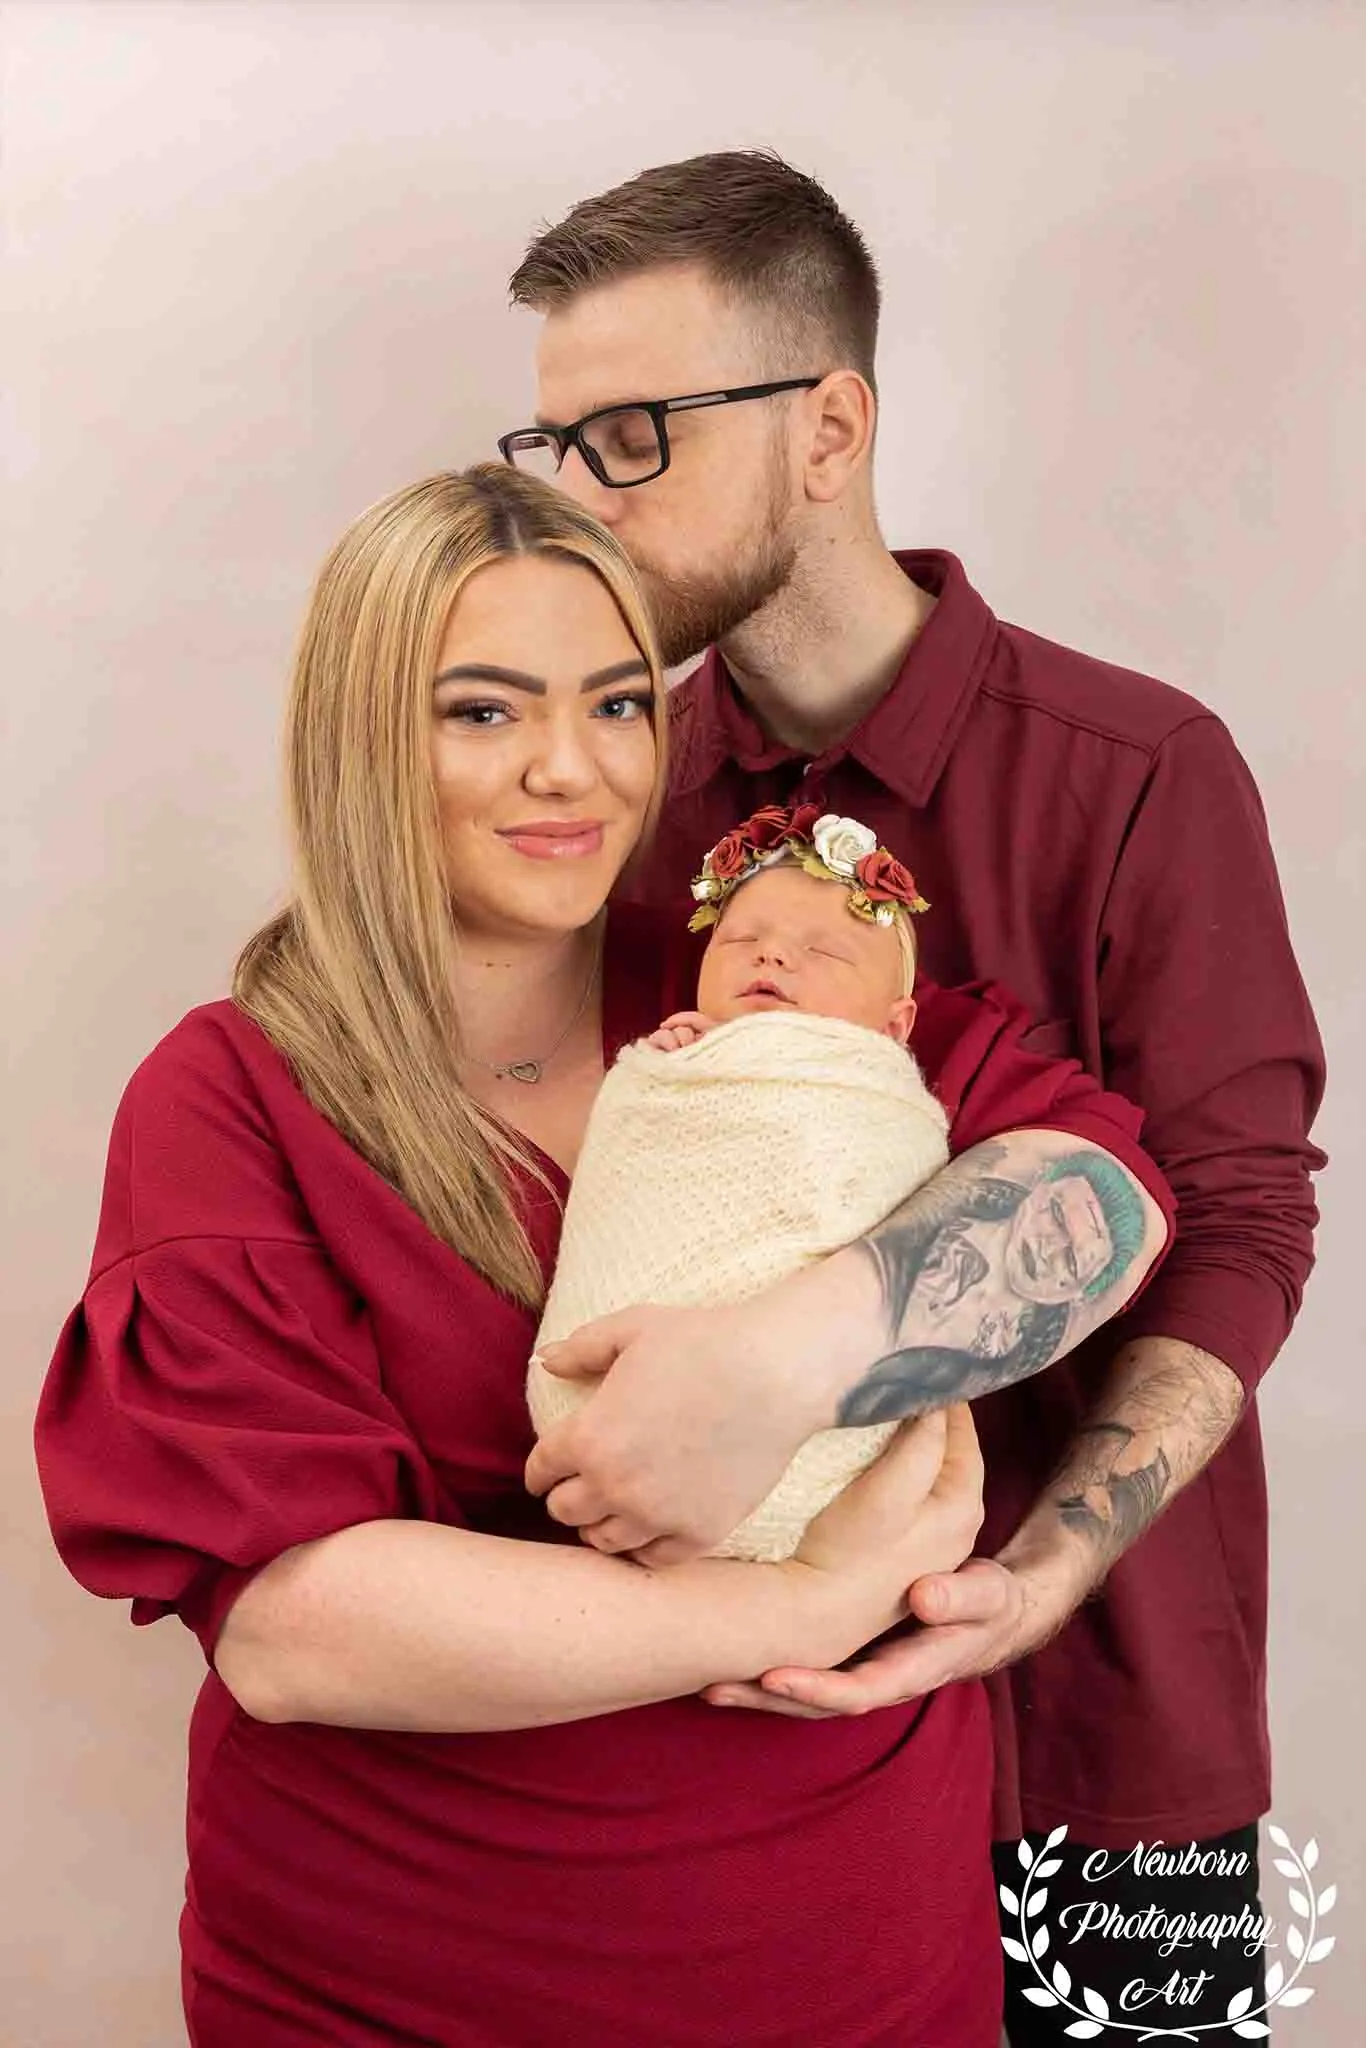 Family photoshoot in milton keynes home studio